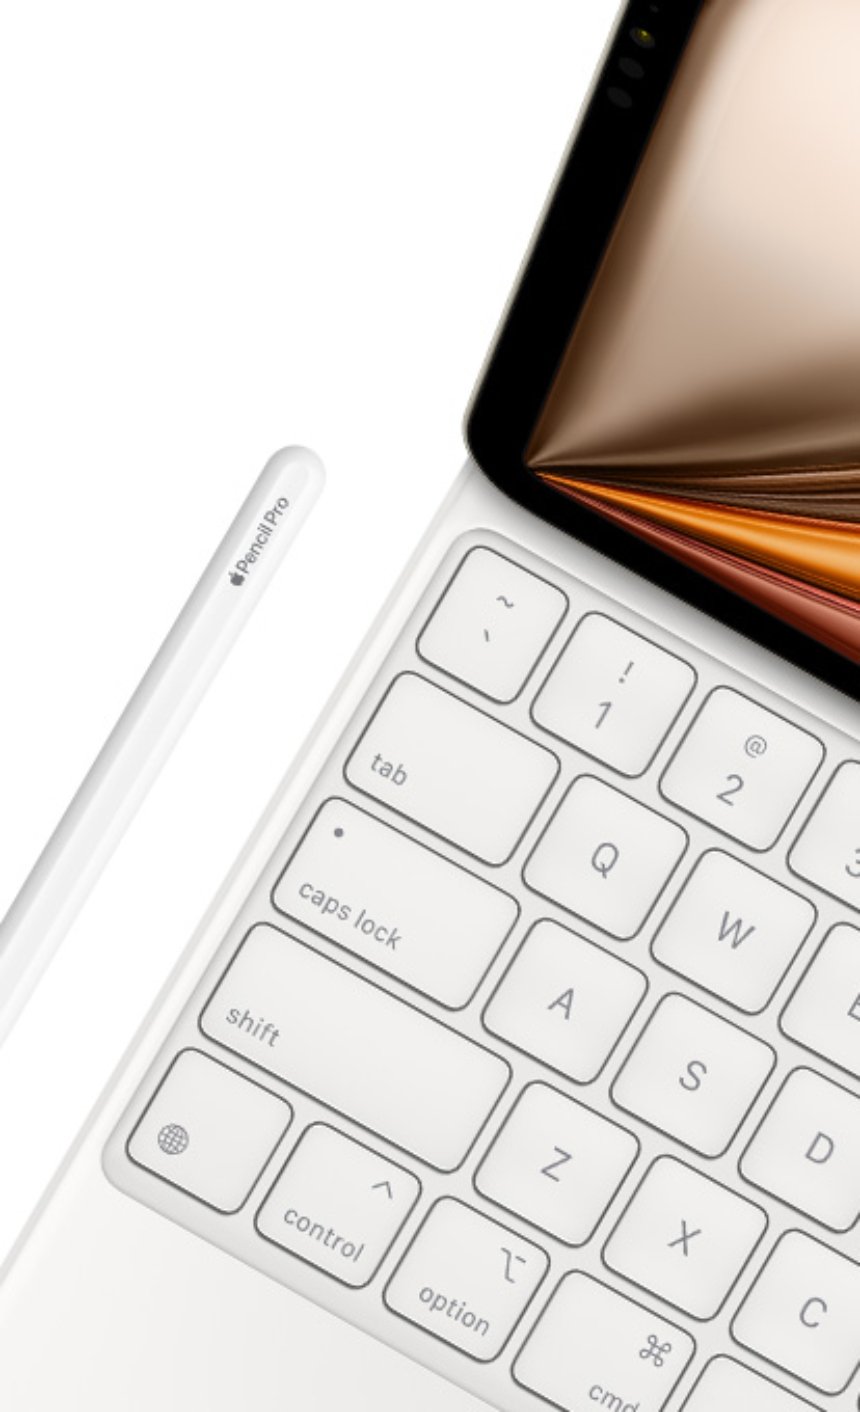  7 травня, компанія Apple провела презентацію оновленої лінійки iPad та деяких аксесуарів до гаджетів.